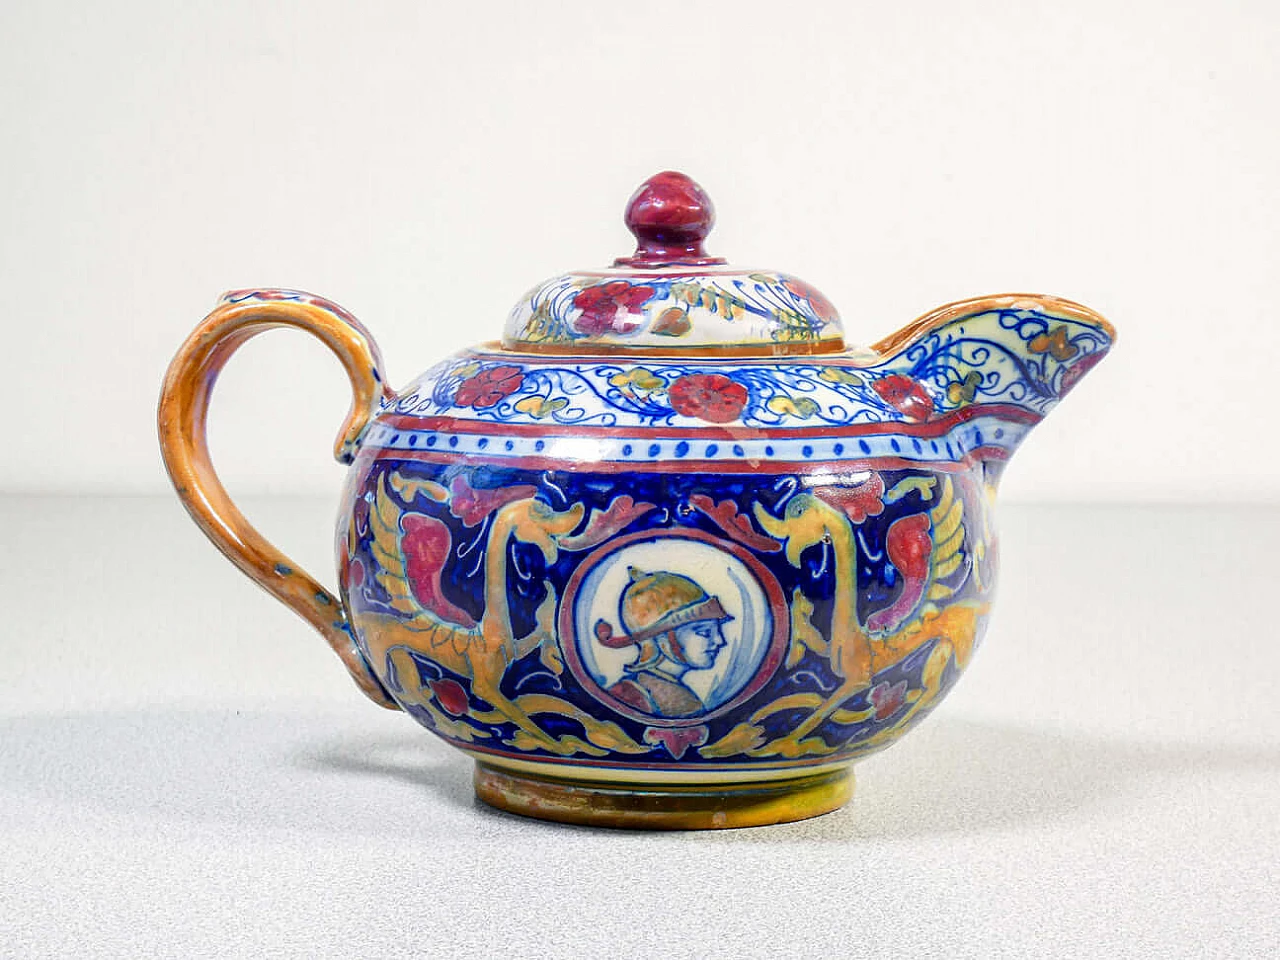 Ceramic teapot and sugar bowl by Mastro Giorgio Gualdo Tadino, early 20th century 2